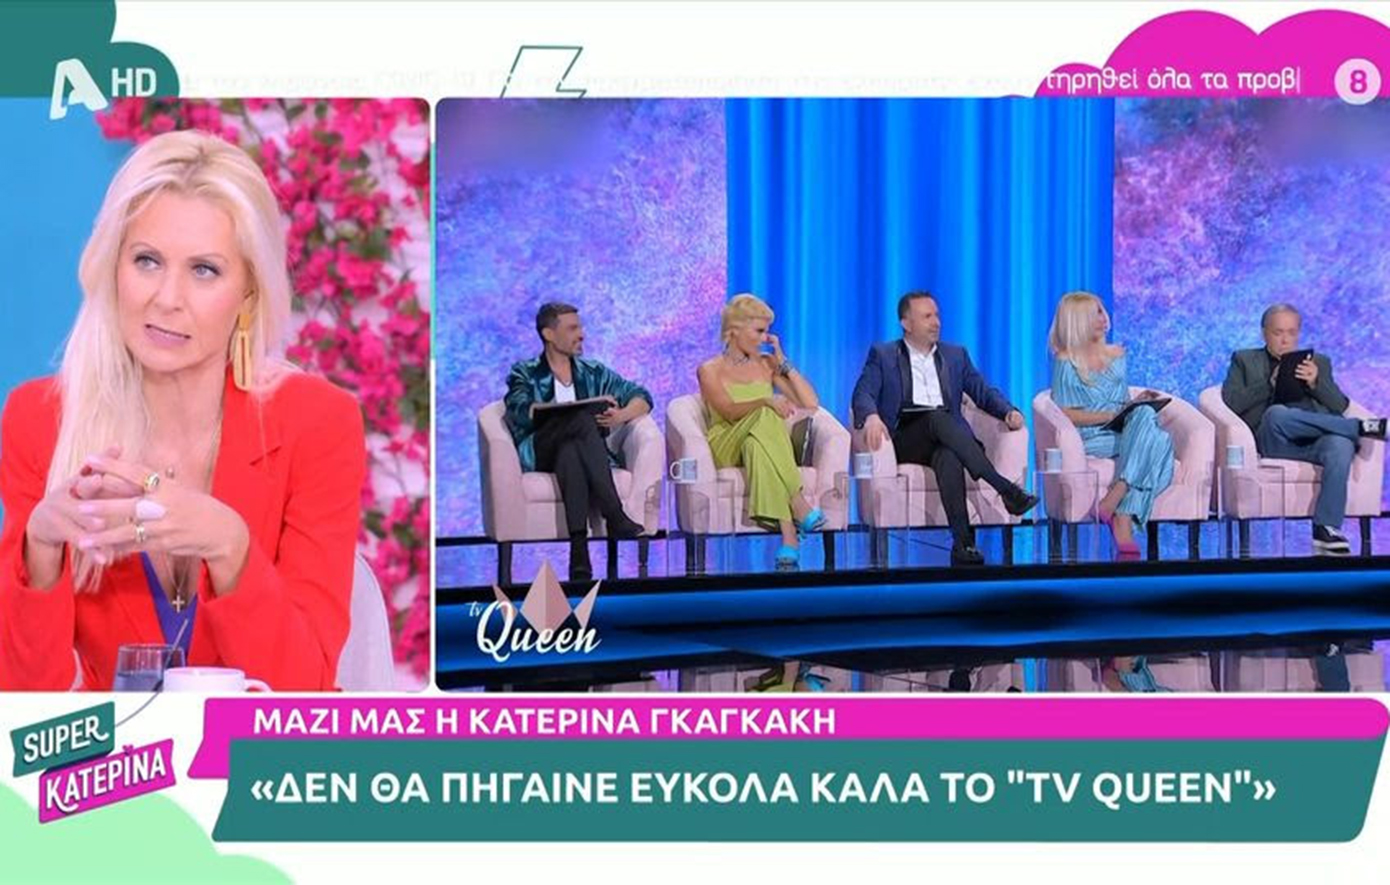 Κατερίνα Γκαγκάκη: Δεν θα πήγαινε εύκολα καλά το TV Queen, χαίρομαι που το τολμήσαμε